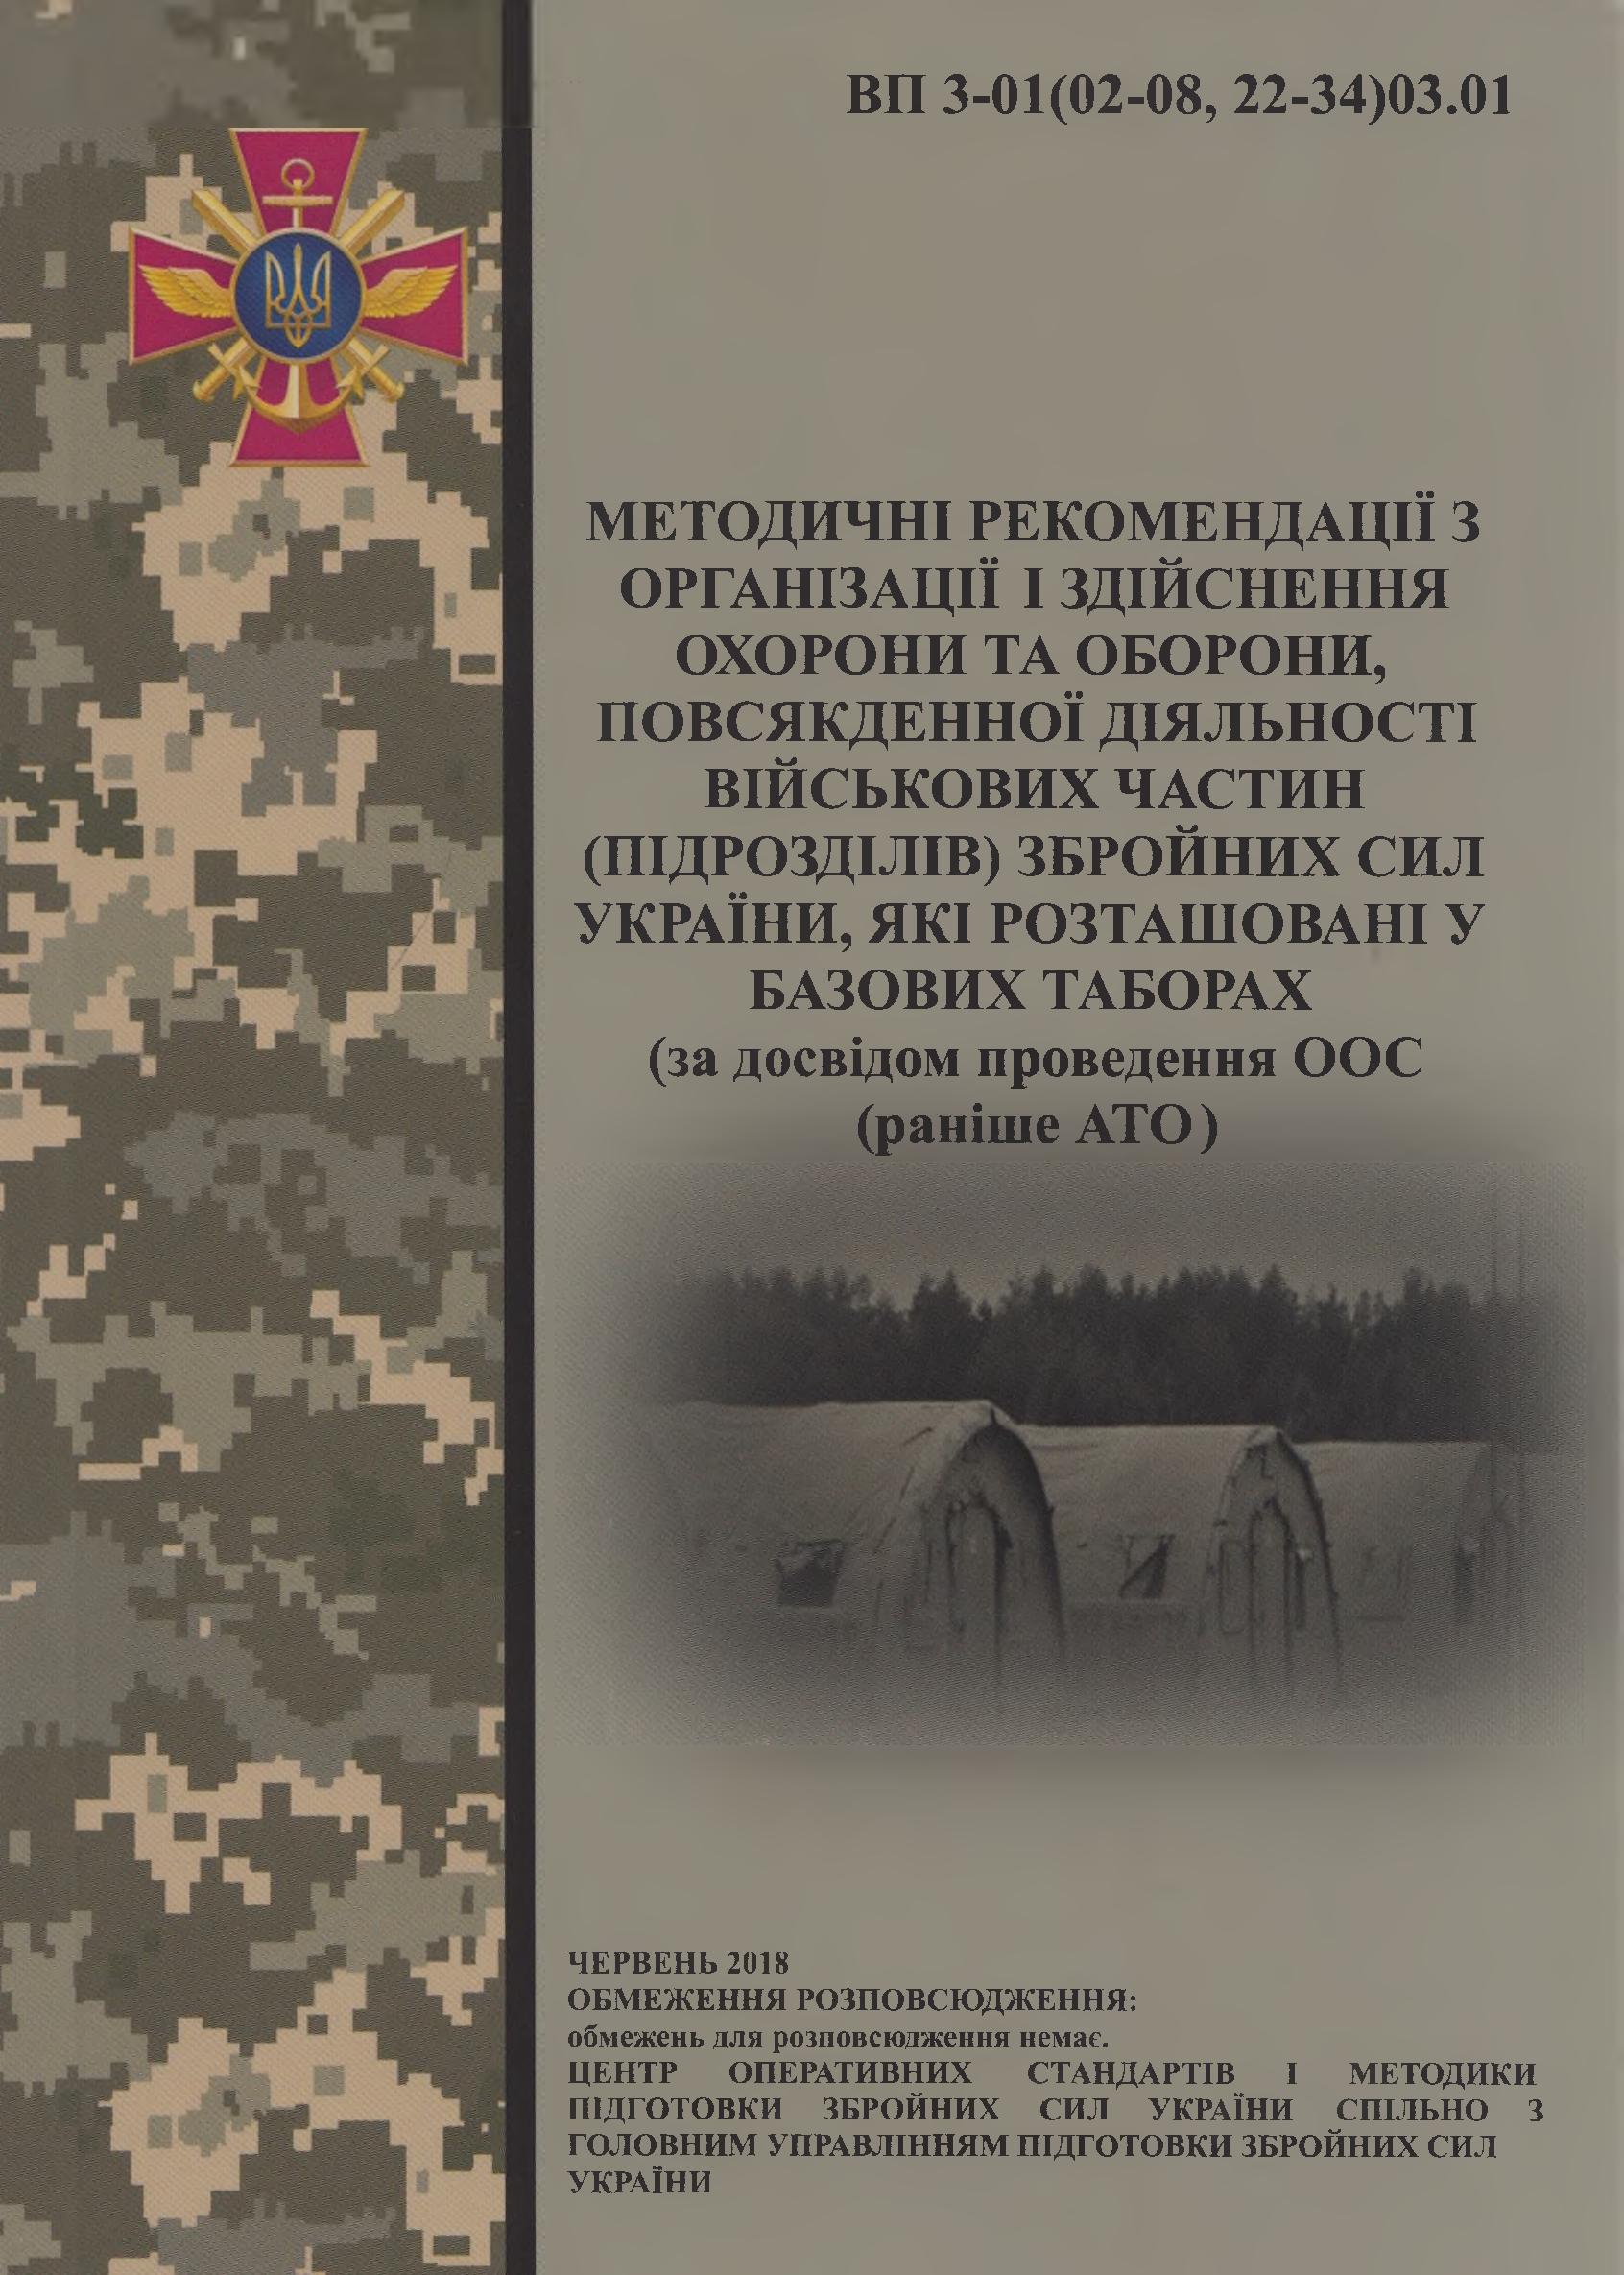 Методичні рекомендації з організації і здійснення охорони та оборони, повсякденної діяльності військових частин (підрозділів) Збройних Сил України, які розташовані у базових таборах  (за досвідом проведення ООС  (раніше АТО)